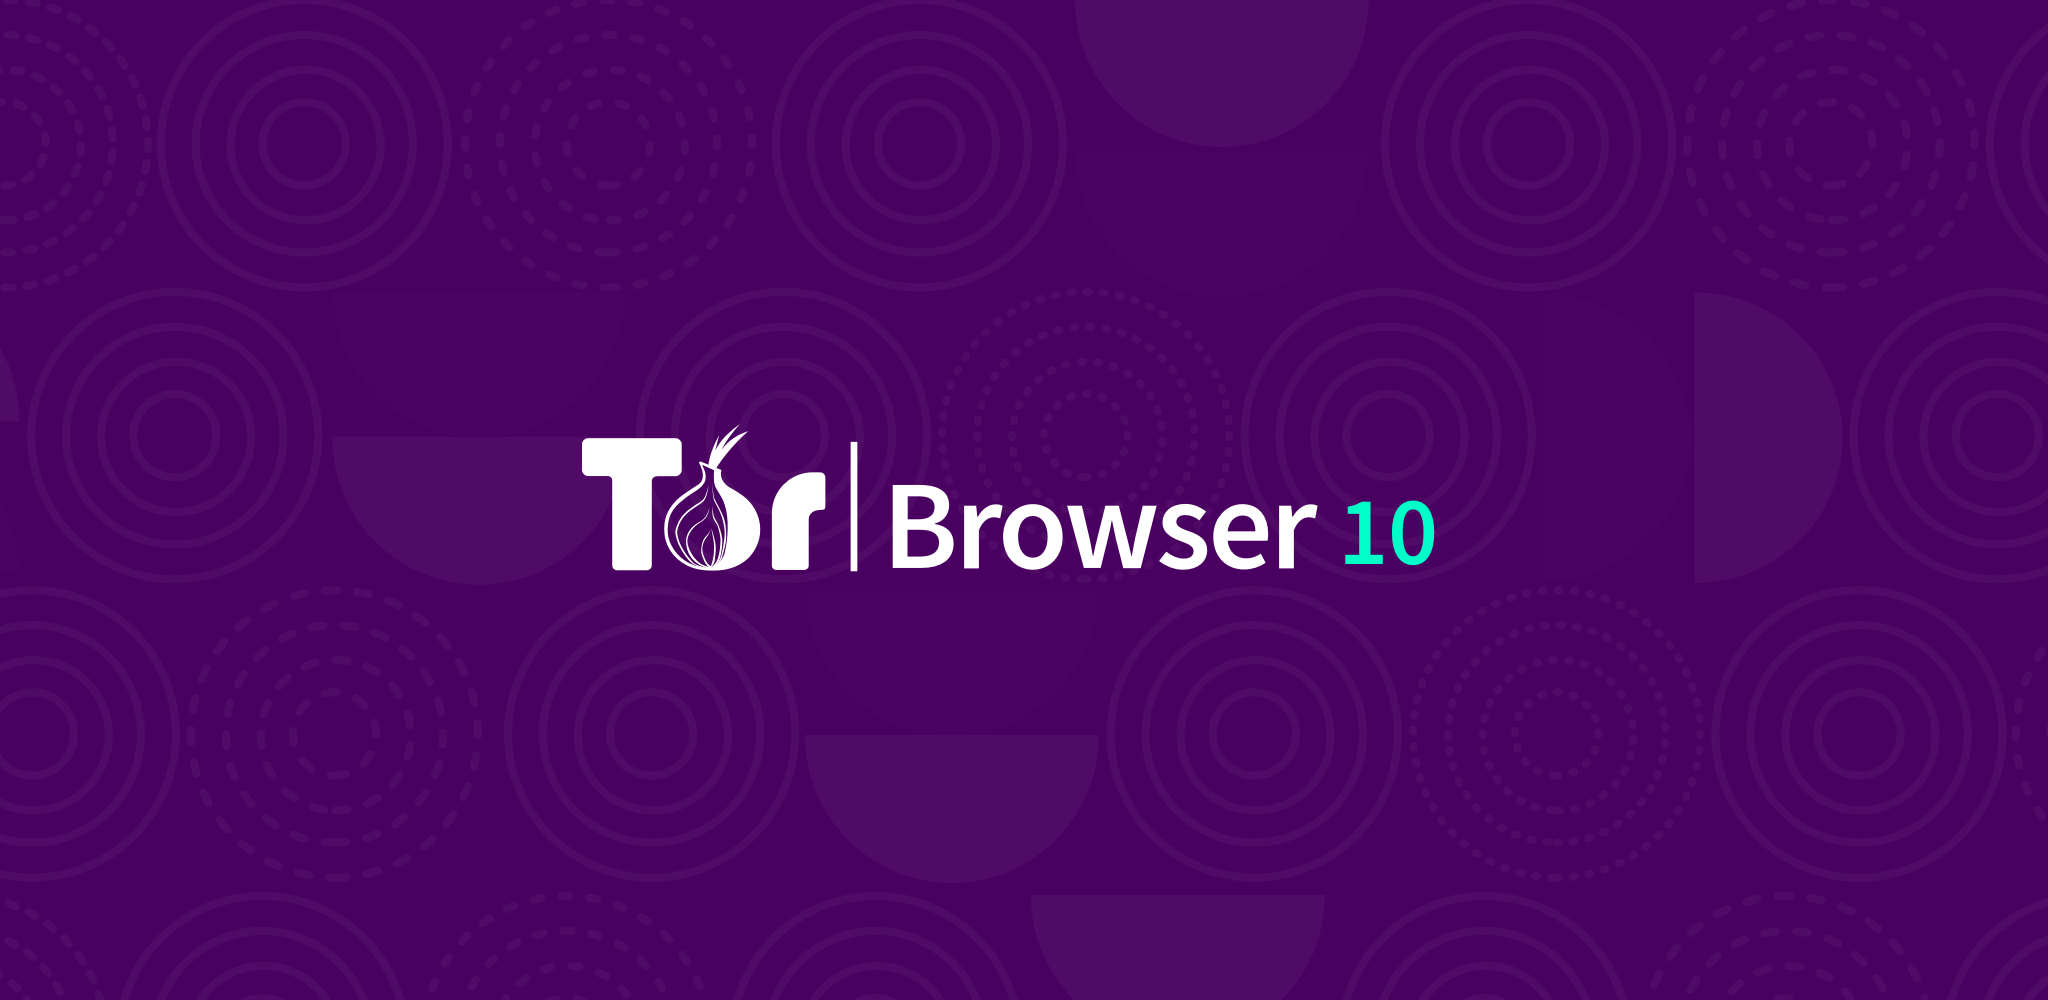 tor browser для windows 8 скачать mega